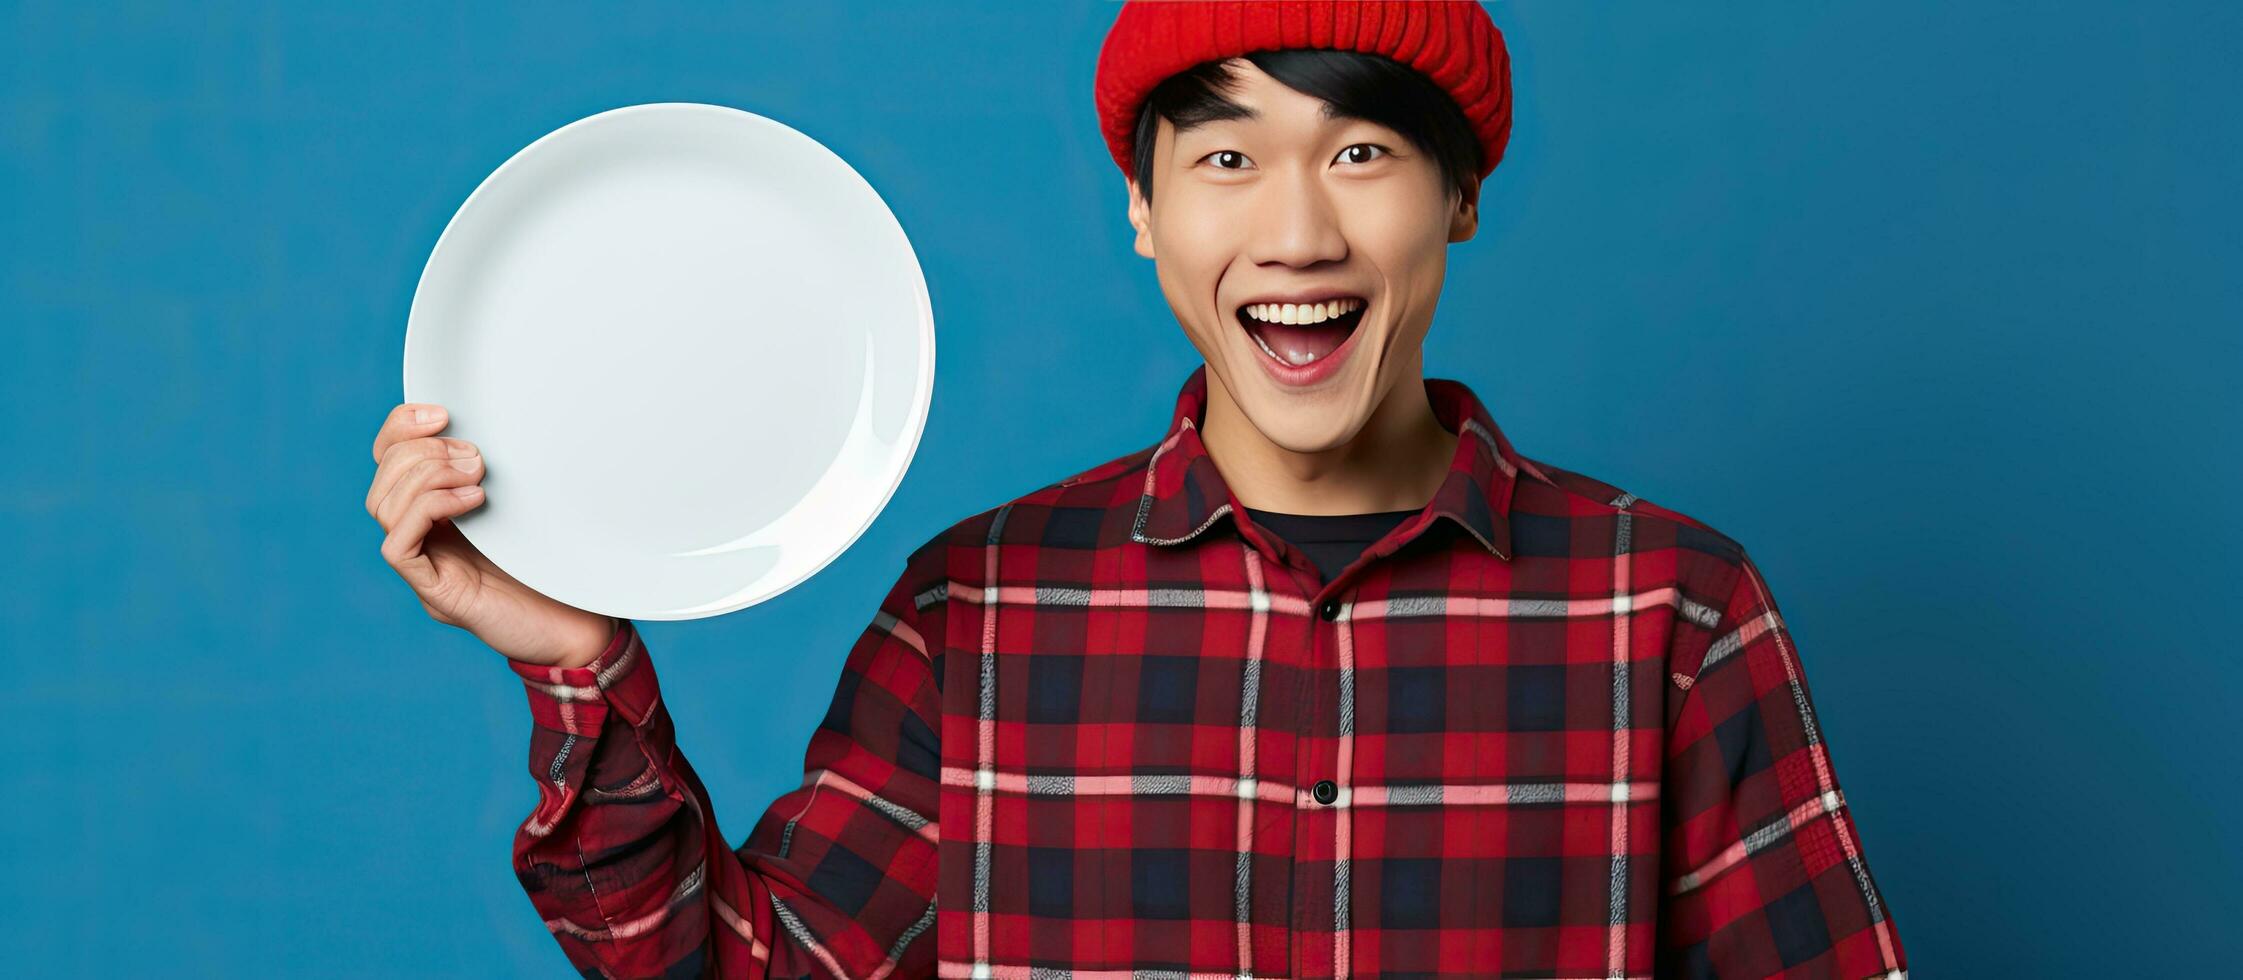 asiatisk man med mössa hatt och pläd skjorta pekande vänster med tömma tallrik på blå bakgrund foto